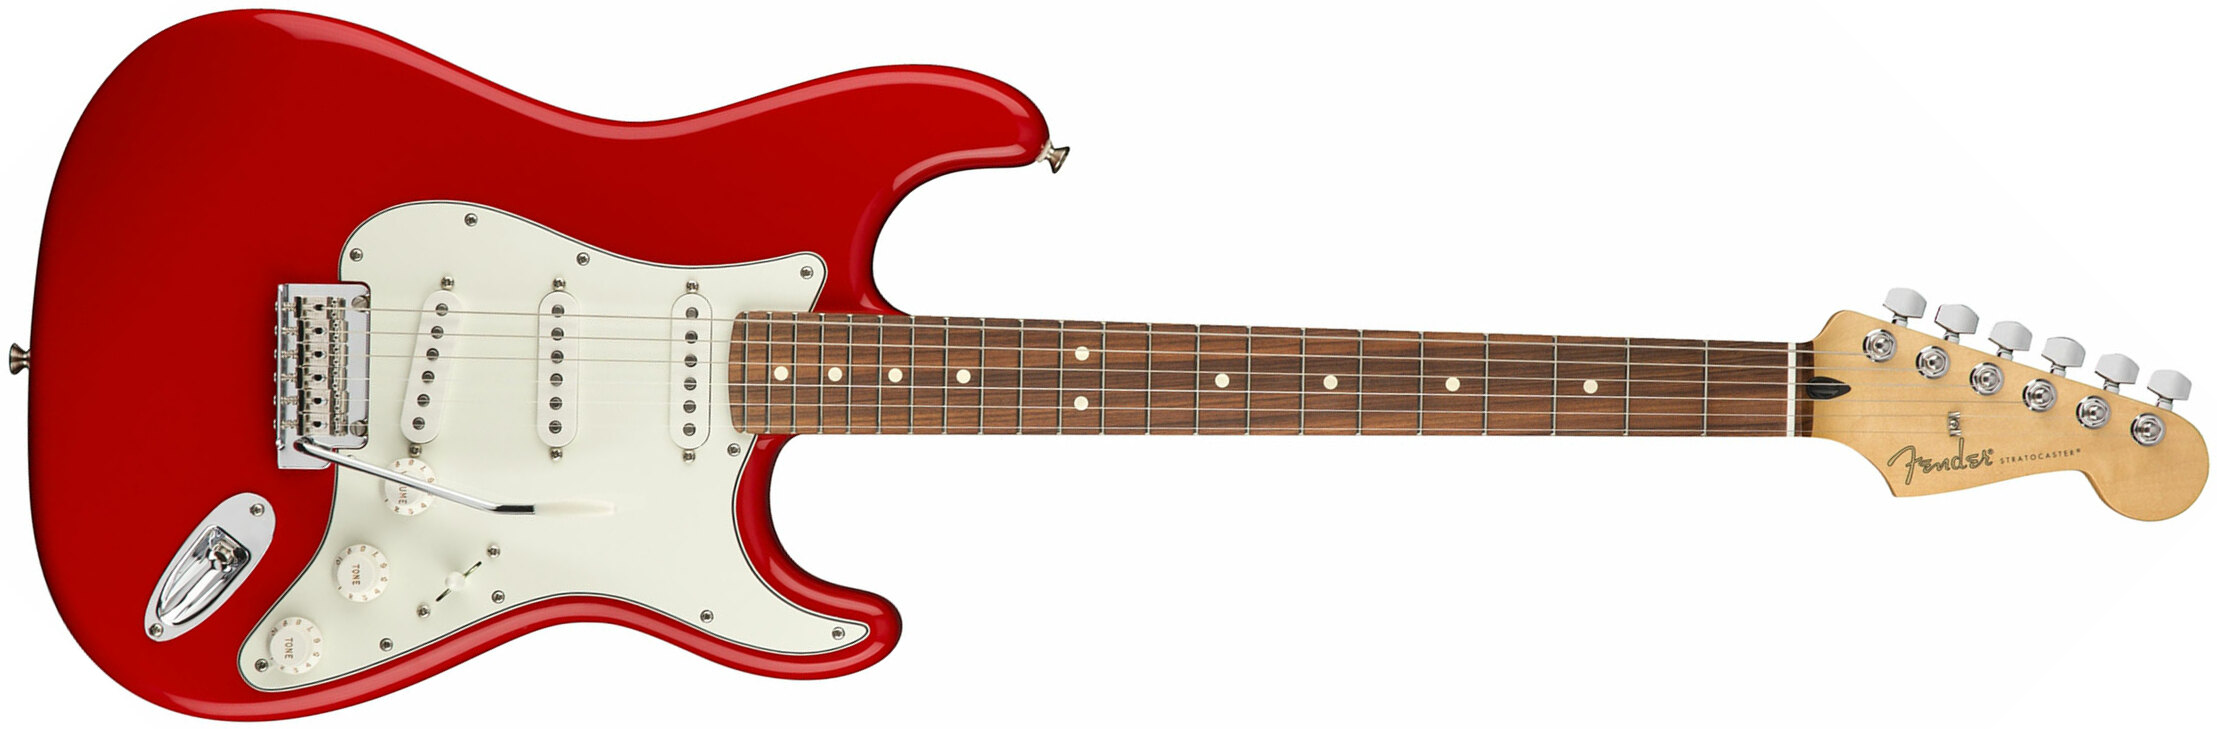 Fender Strat Player Mex Sss Pf - Sonic Red - Elektrische gitaar in Str-vorm - Main picture